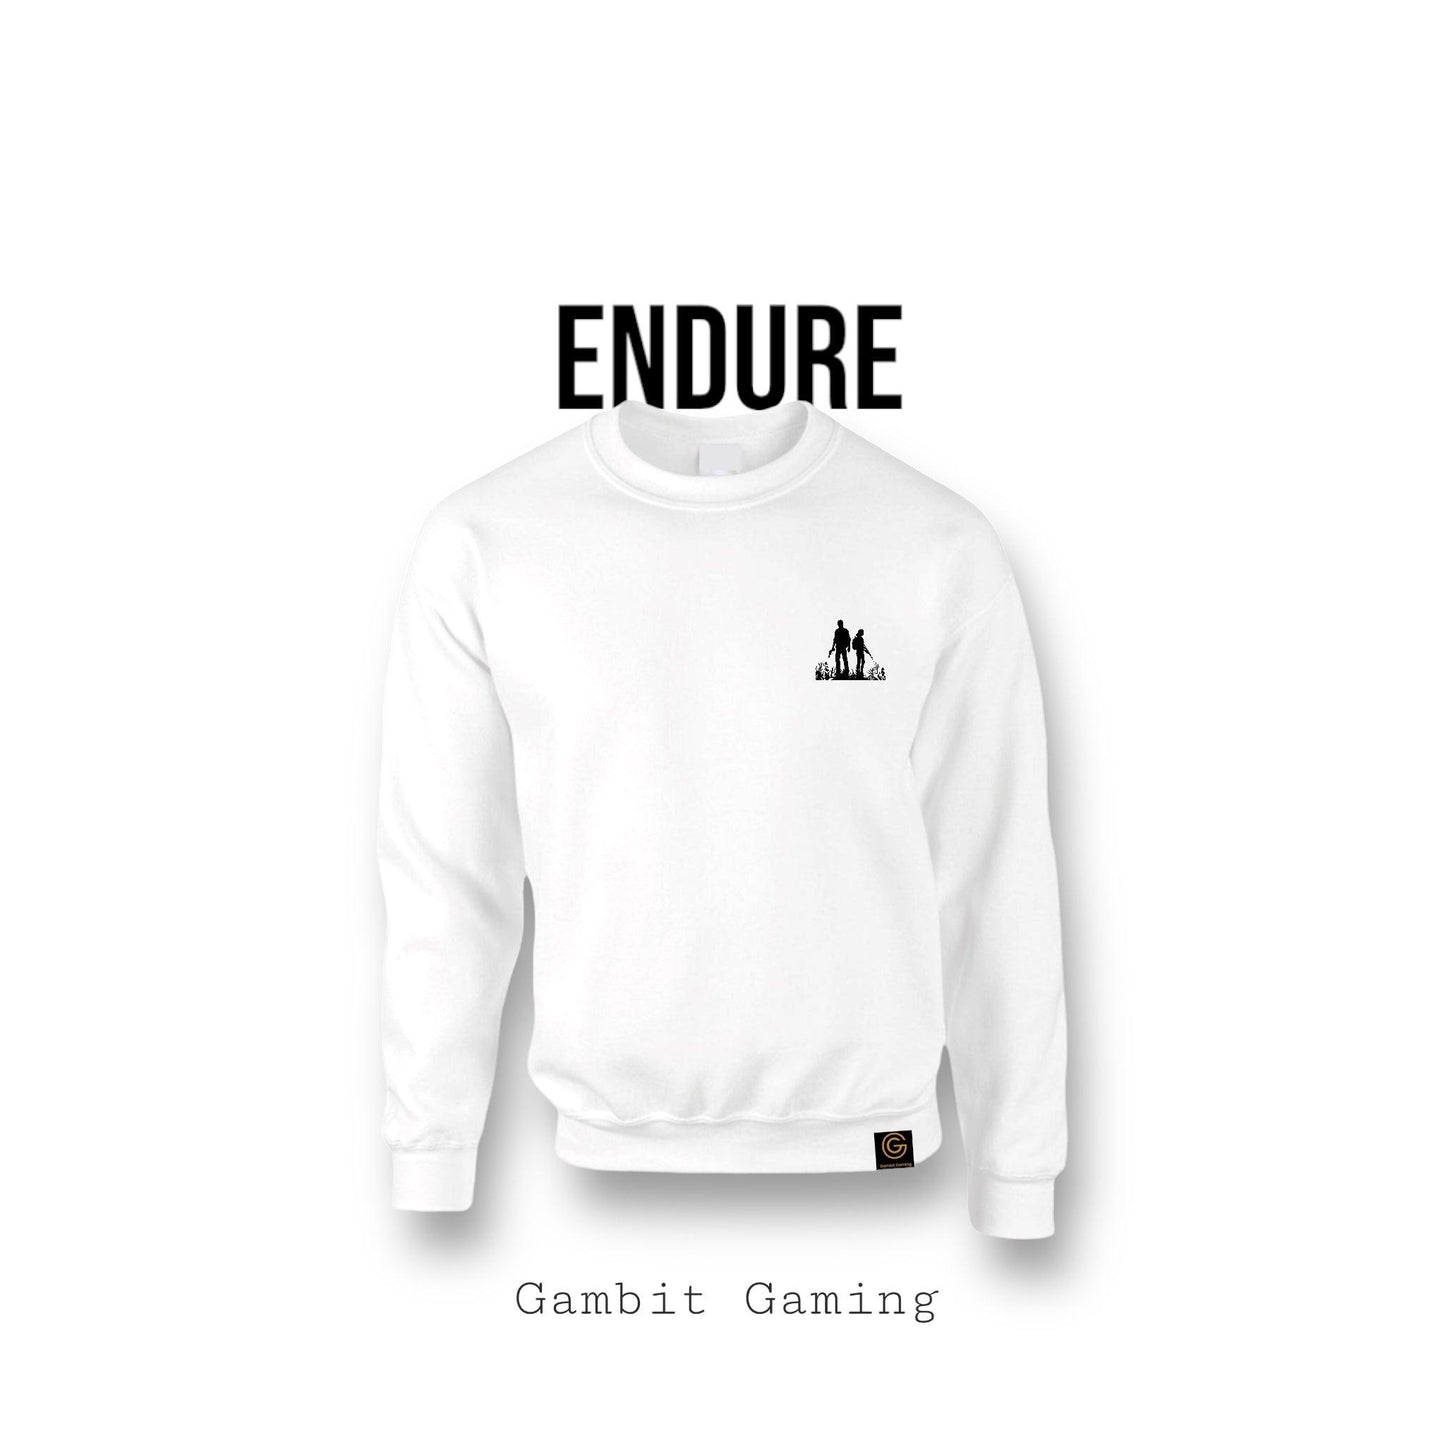 Endure Sweater - Gambit Gaming